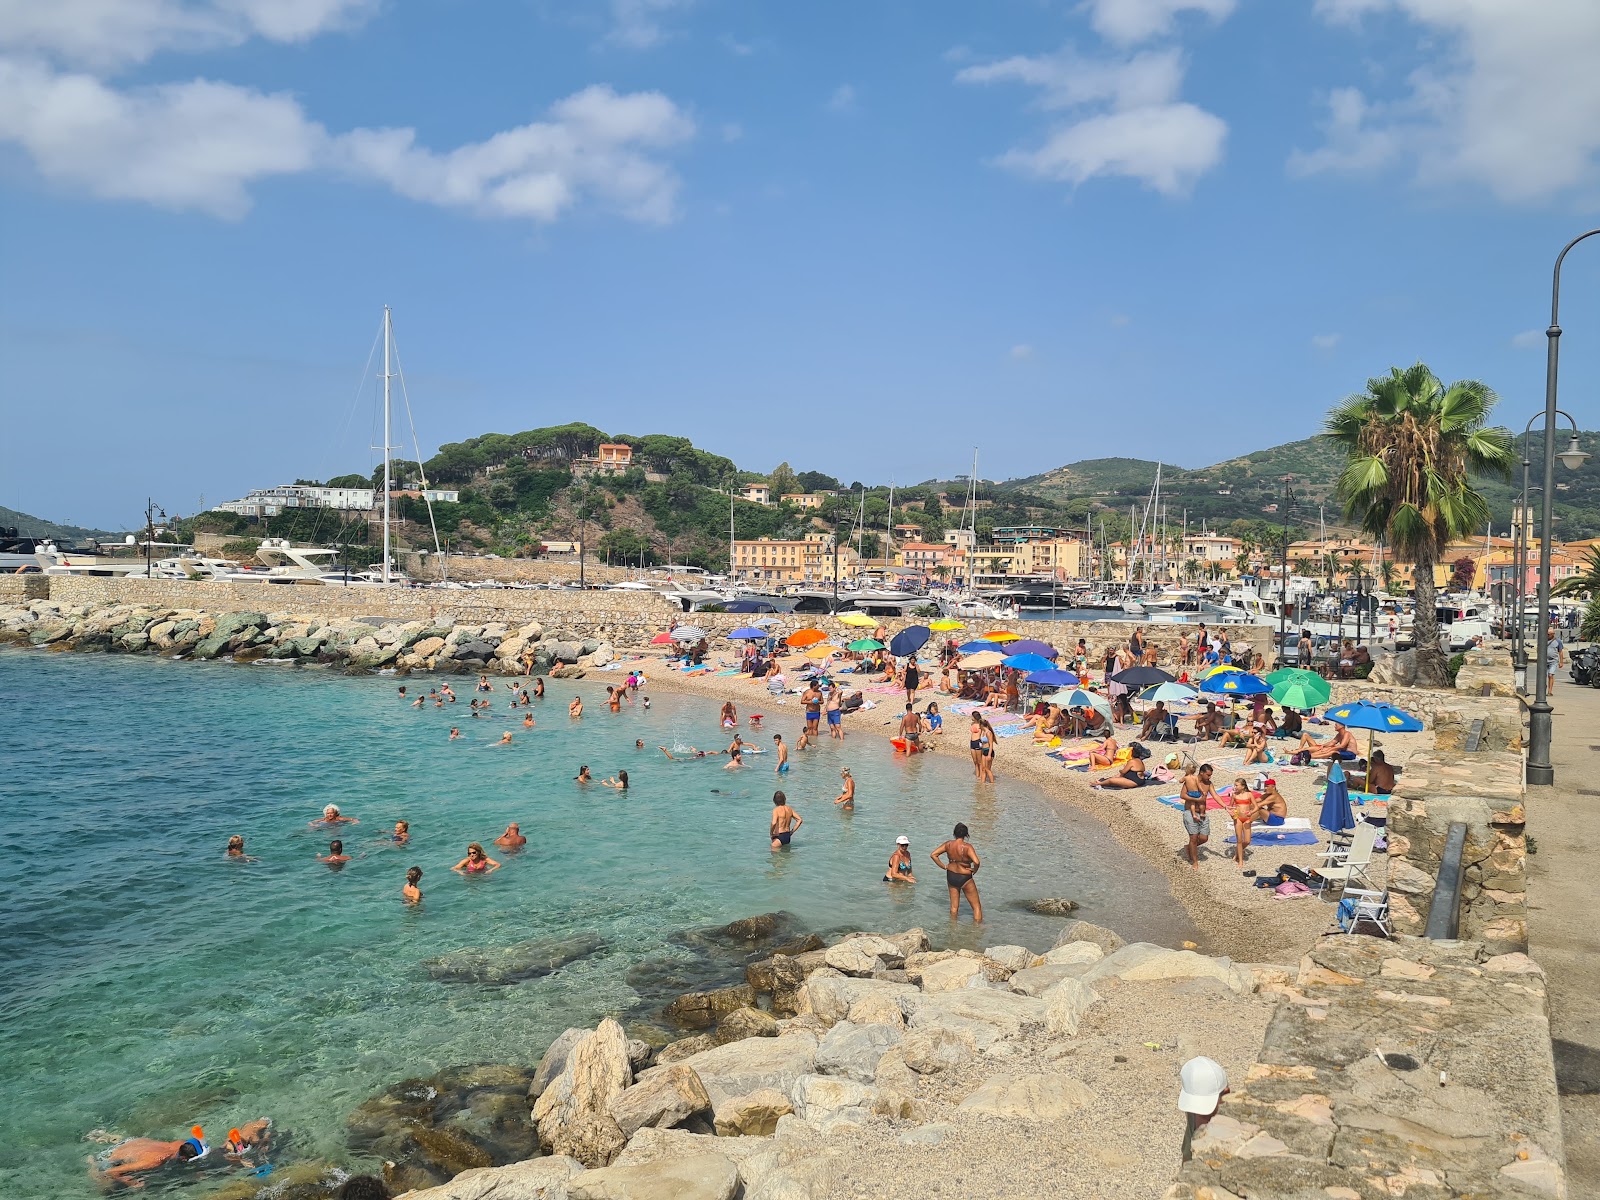 Spiaggia della Pianotta'in fotoğrafı hafif ince çakıl taş yüzey ile